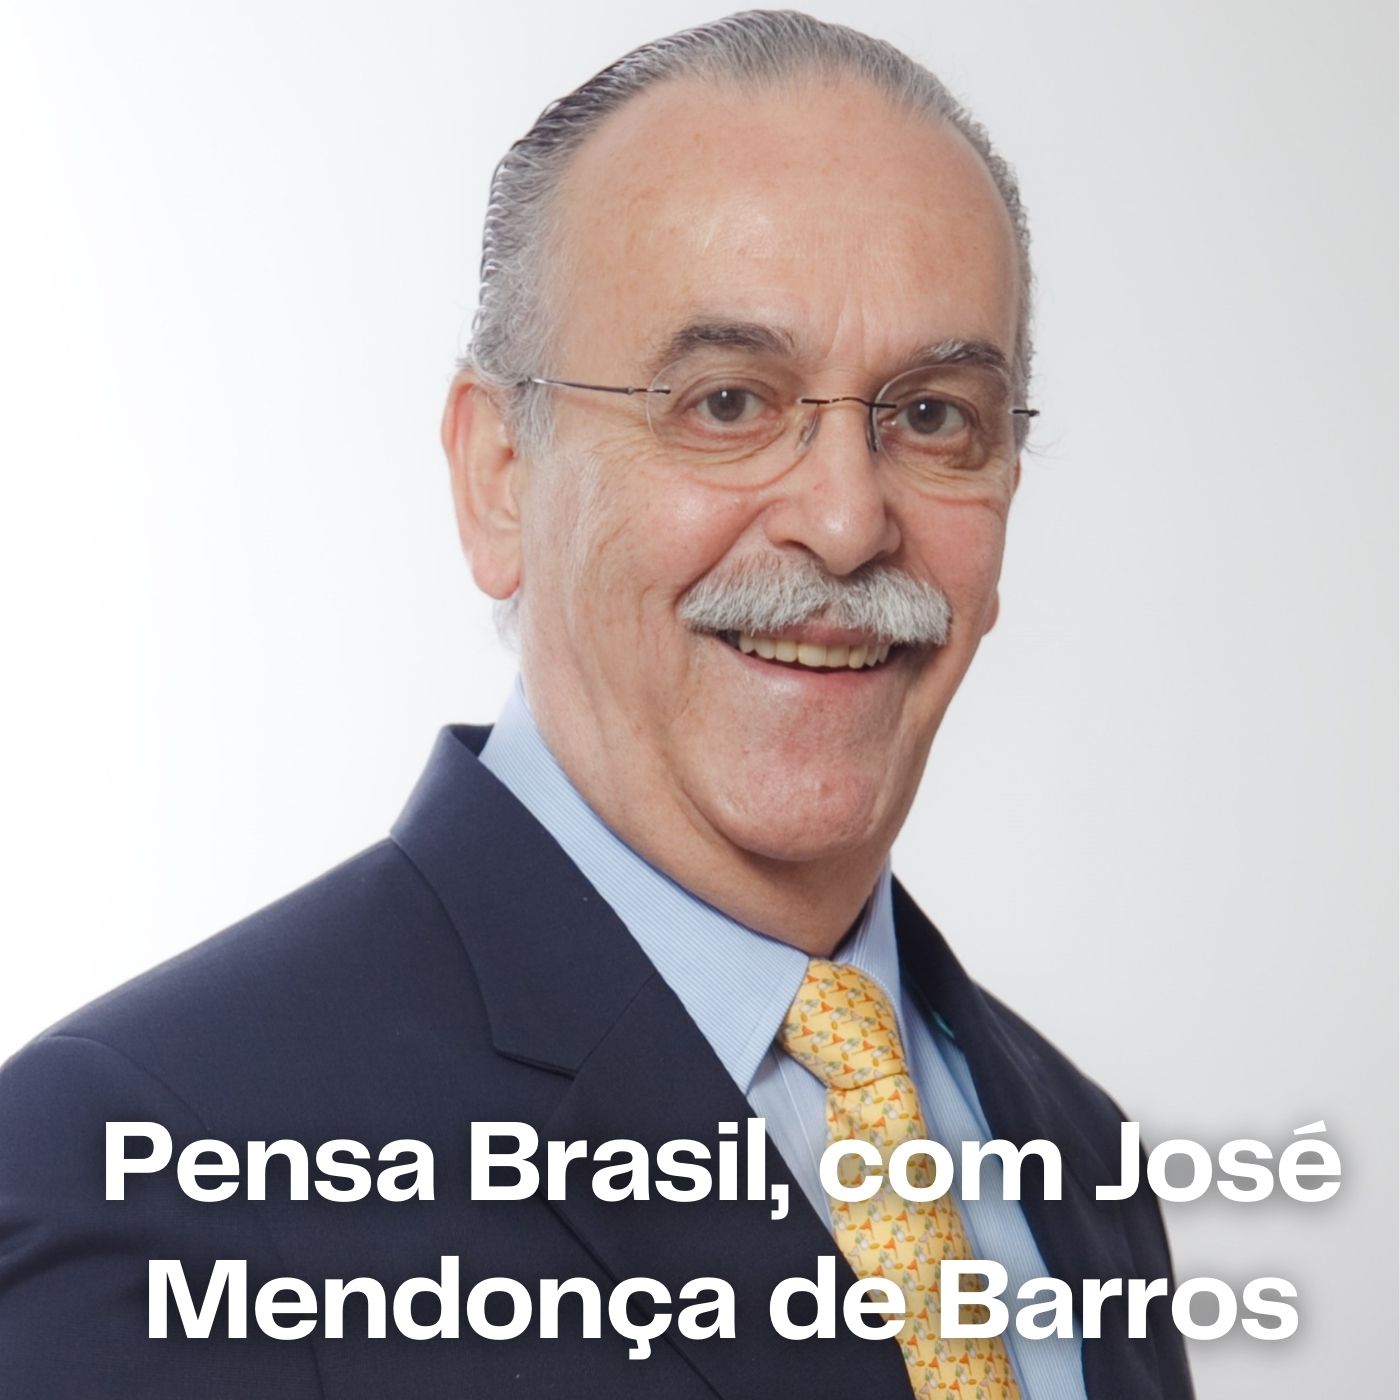 10/11/2020 – José Roberto Mendonça de Barros comenta sobre o atraso das reformas e privatizações de estatais no Brasil